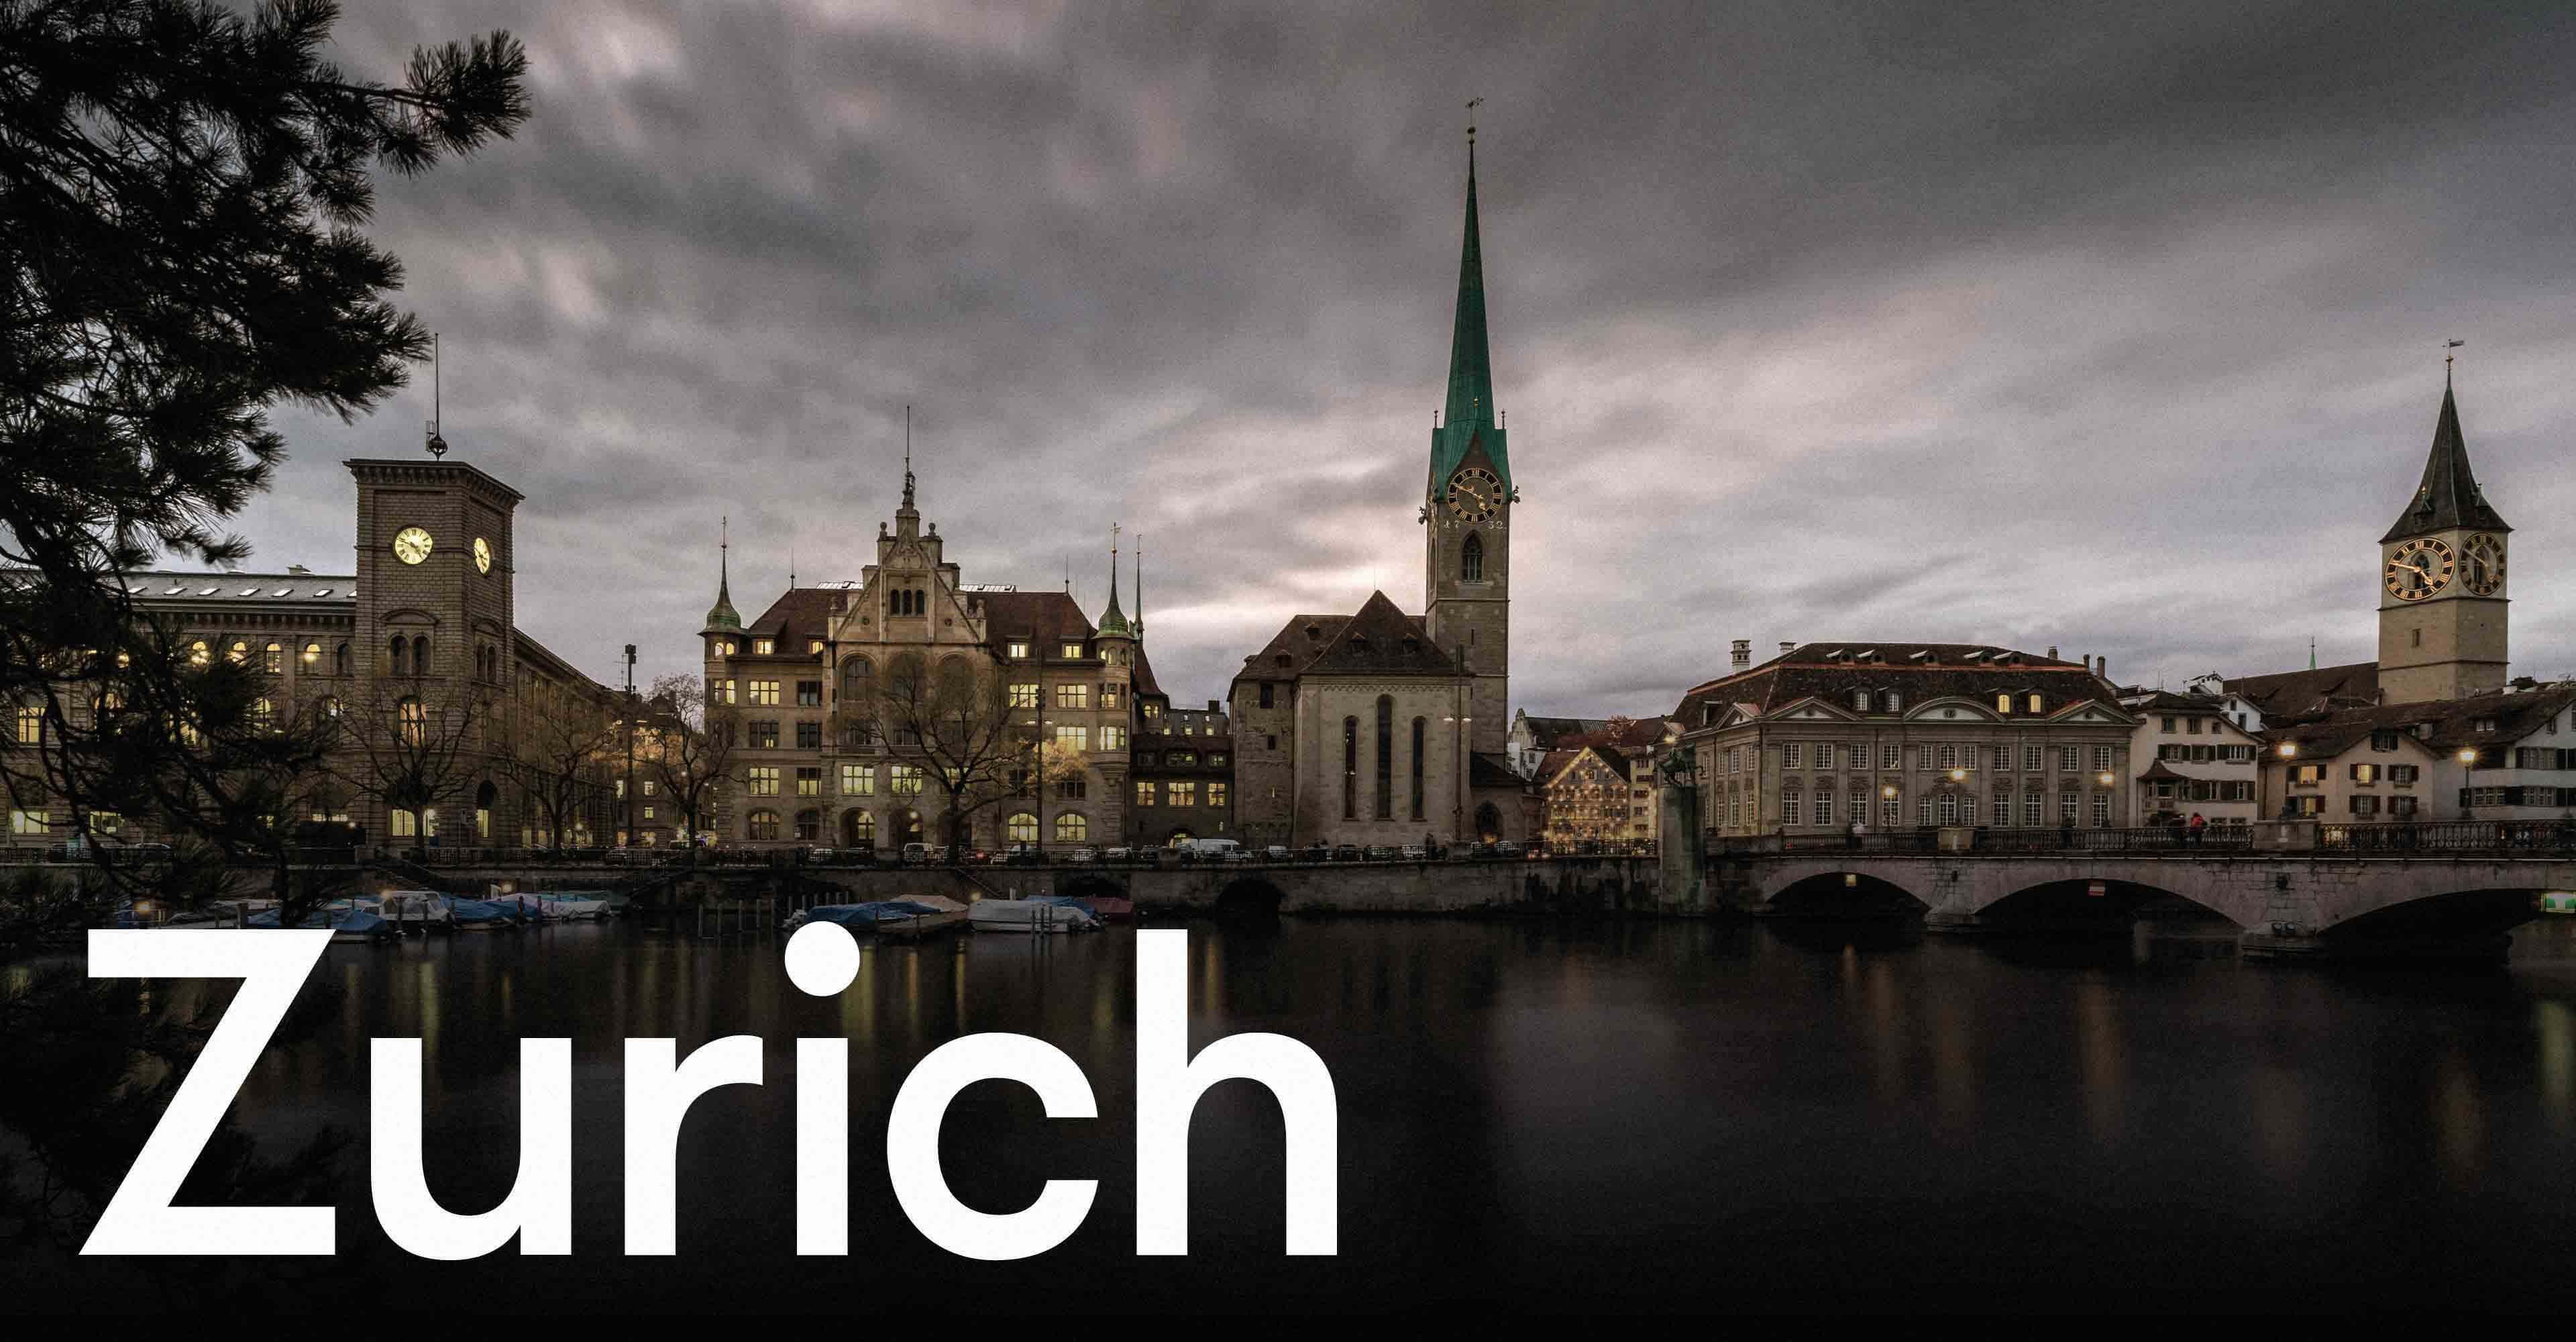 Zurich's city